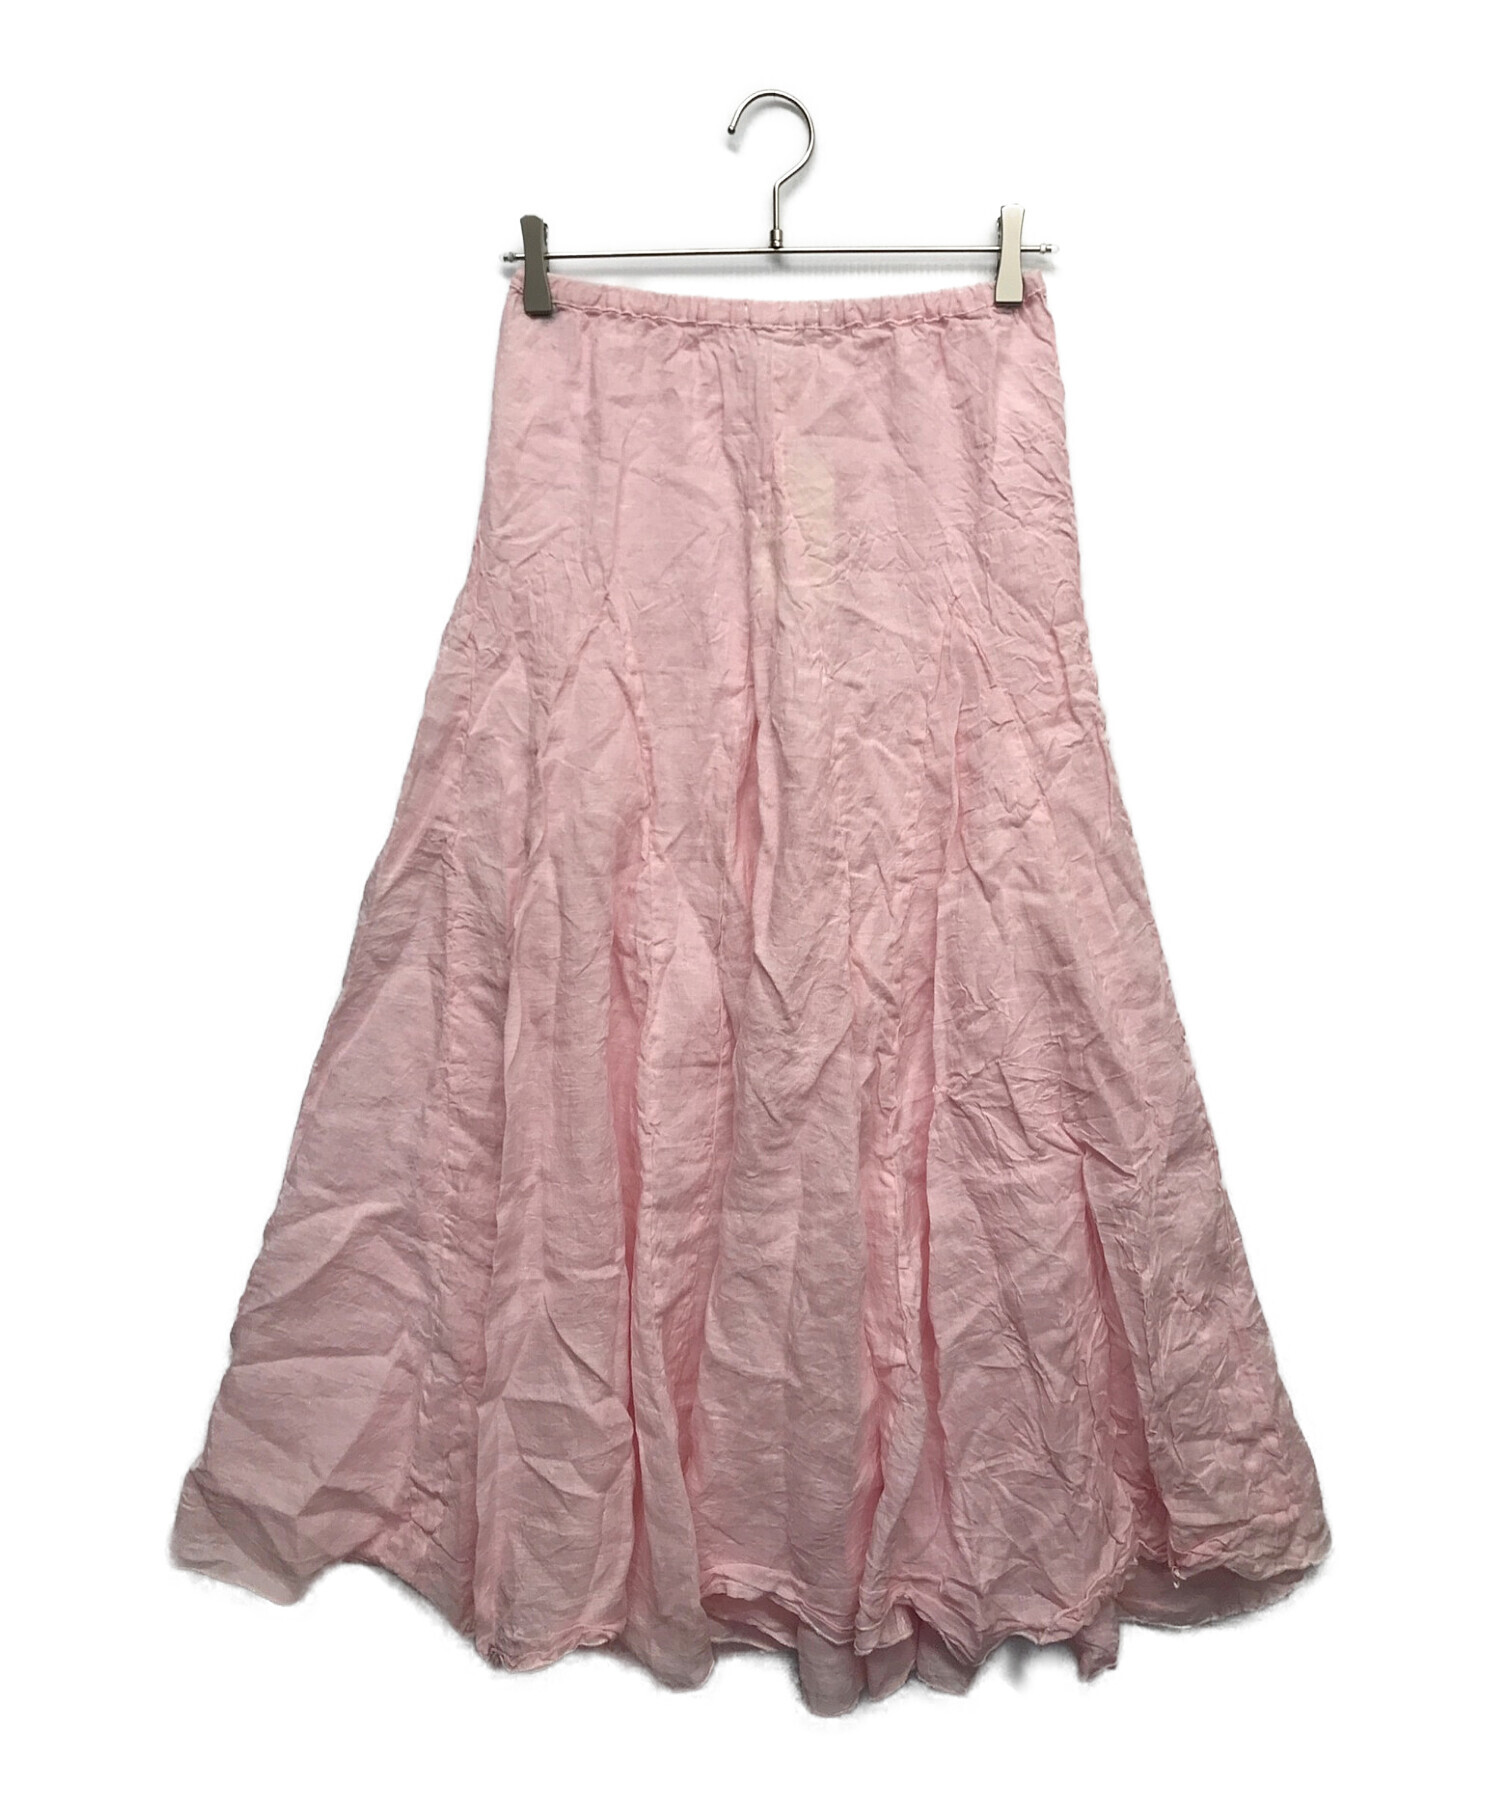 シーピーシェーズの定番麻のスカート - スカート